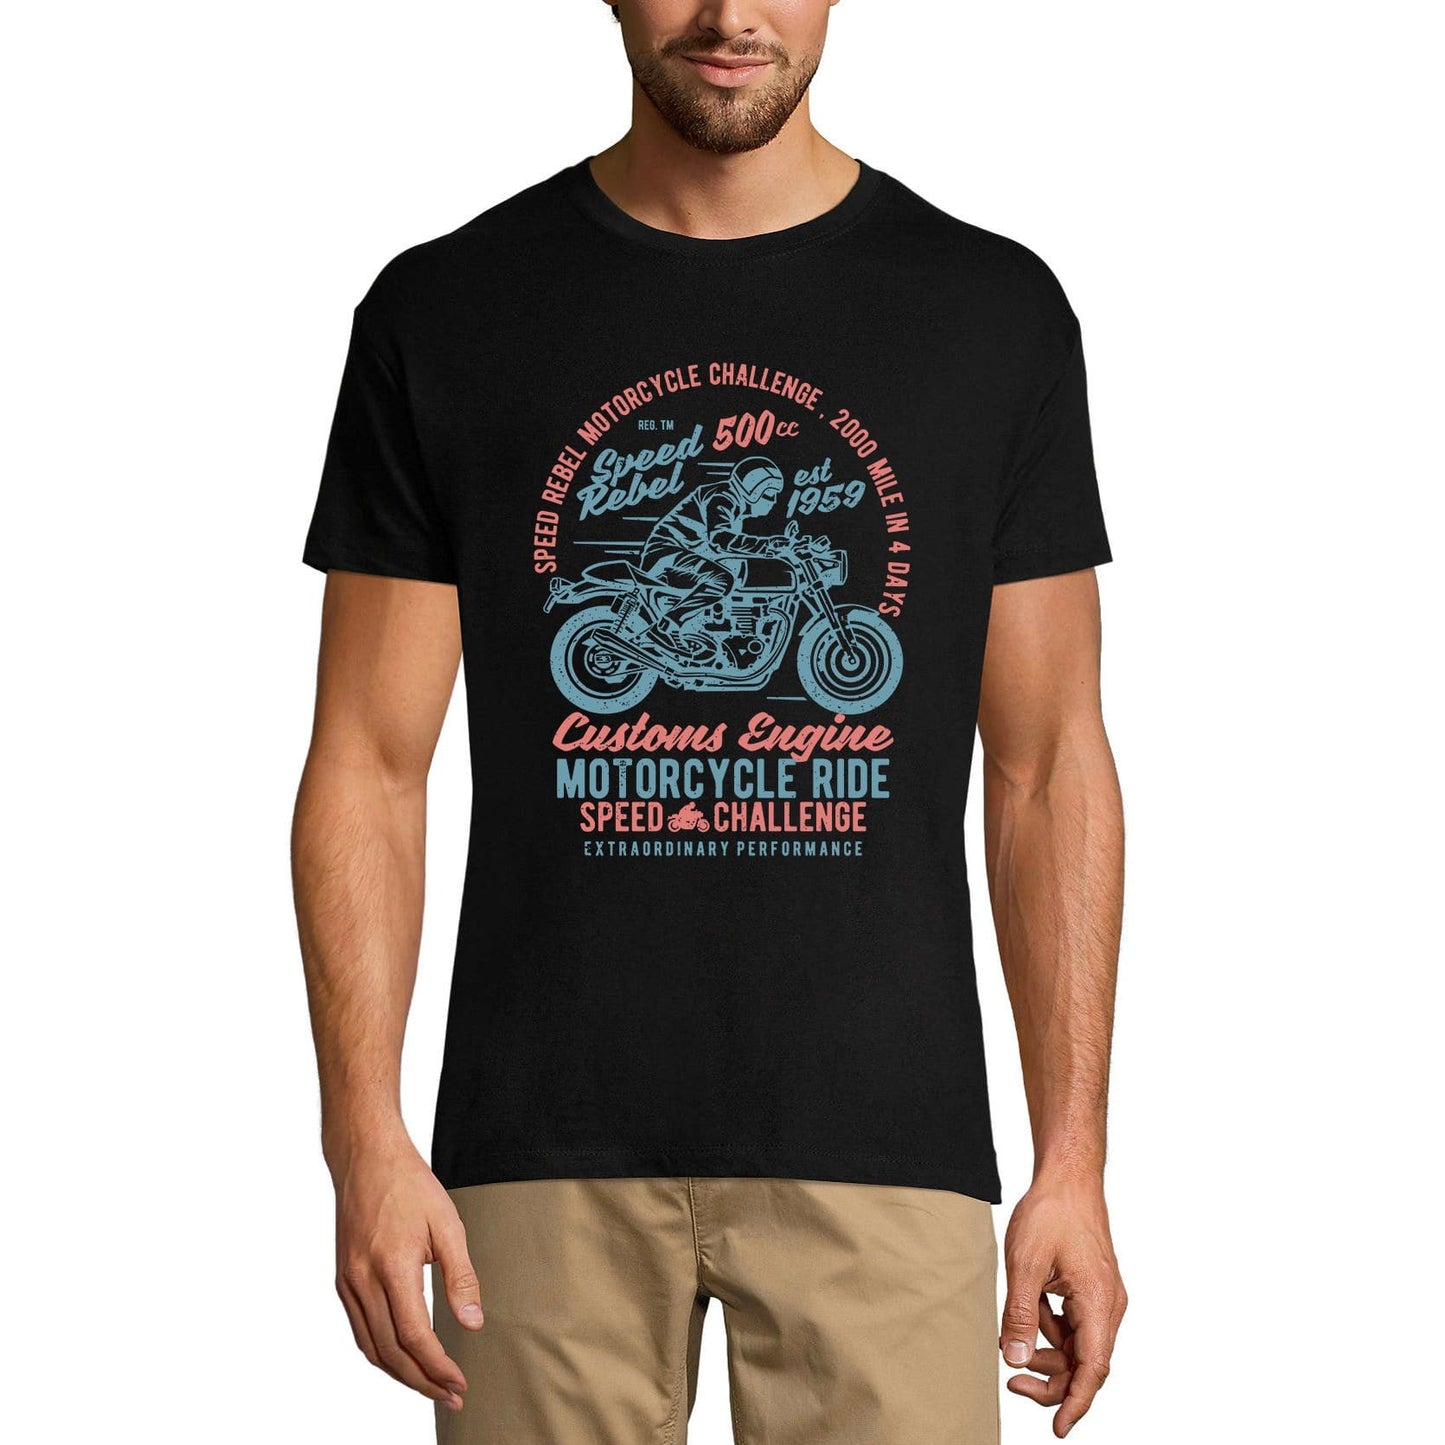 ULTRABASIC Men's T-Shirt Speed Rebel Motorcycle 1959 - Custom Engine Ride Tee Shirt